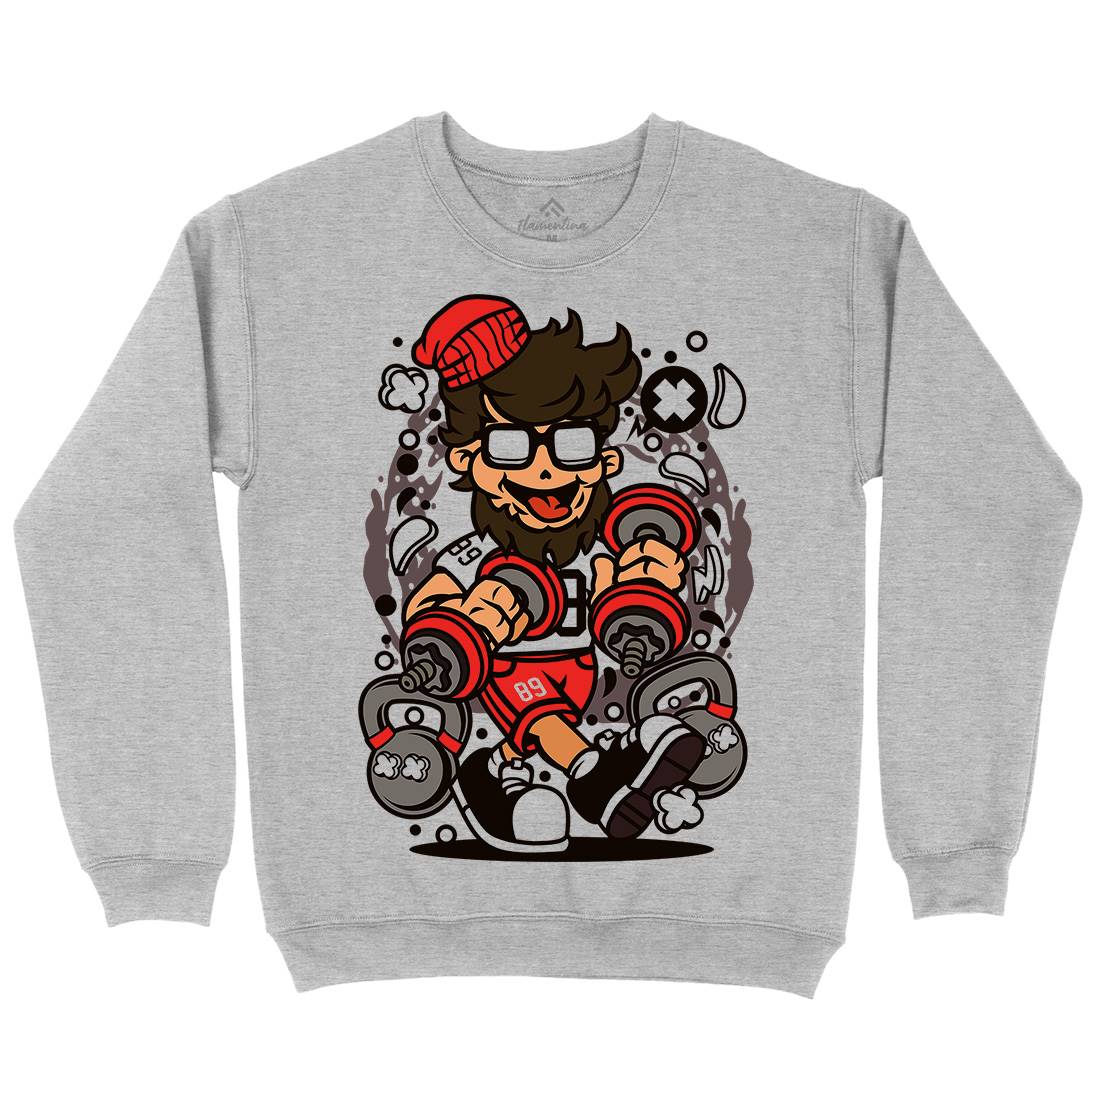 Hipster Kids Crew Neck Sweatshirt Gym C562